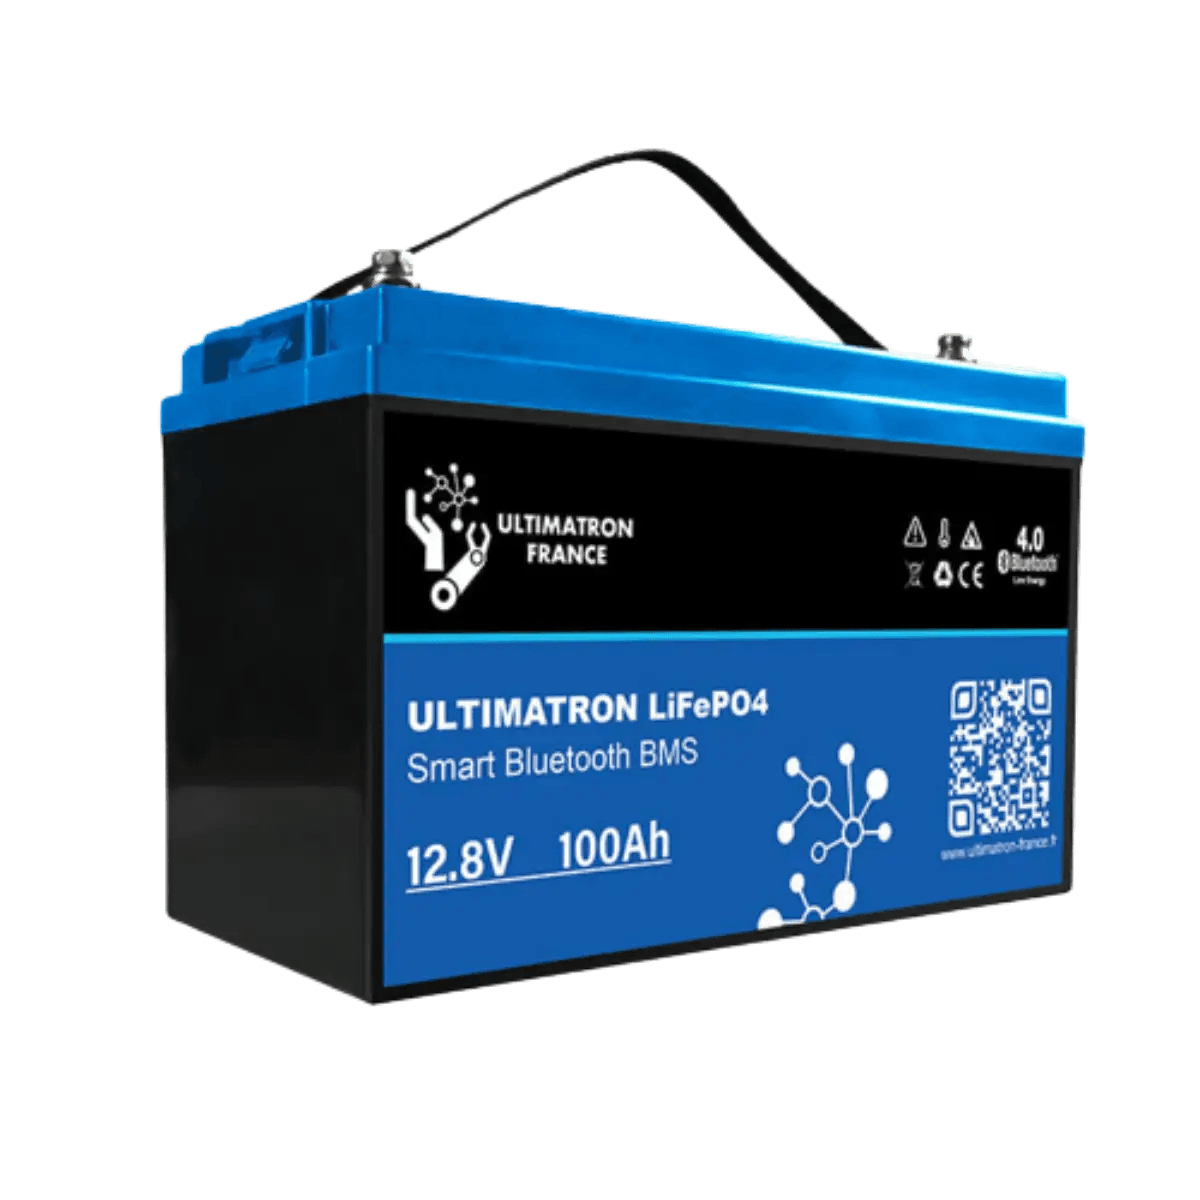 Batterie connectée Lithium LiFePO4 12V 100Ah, série UBL